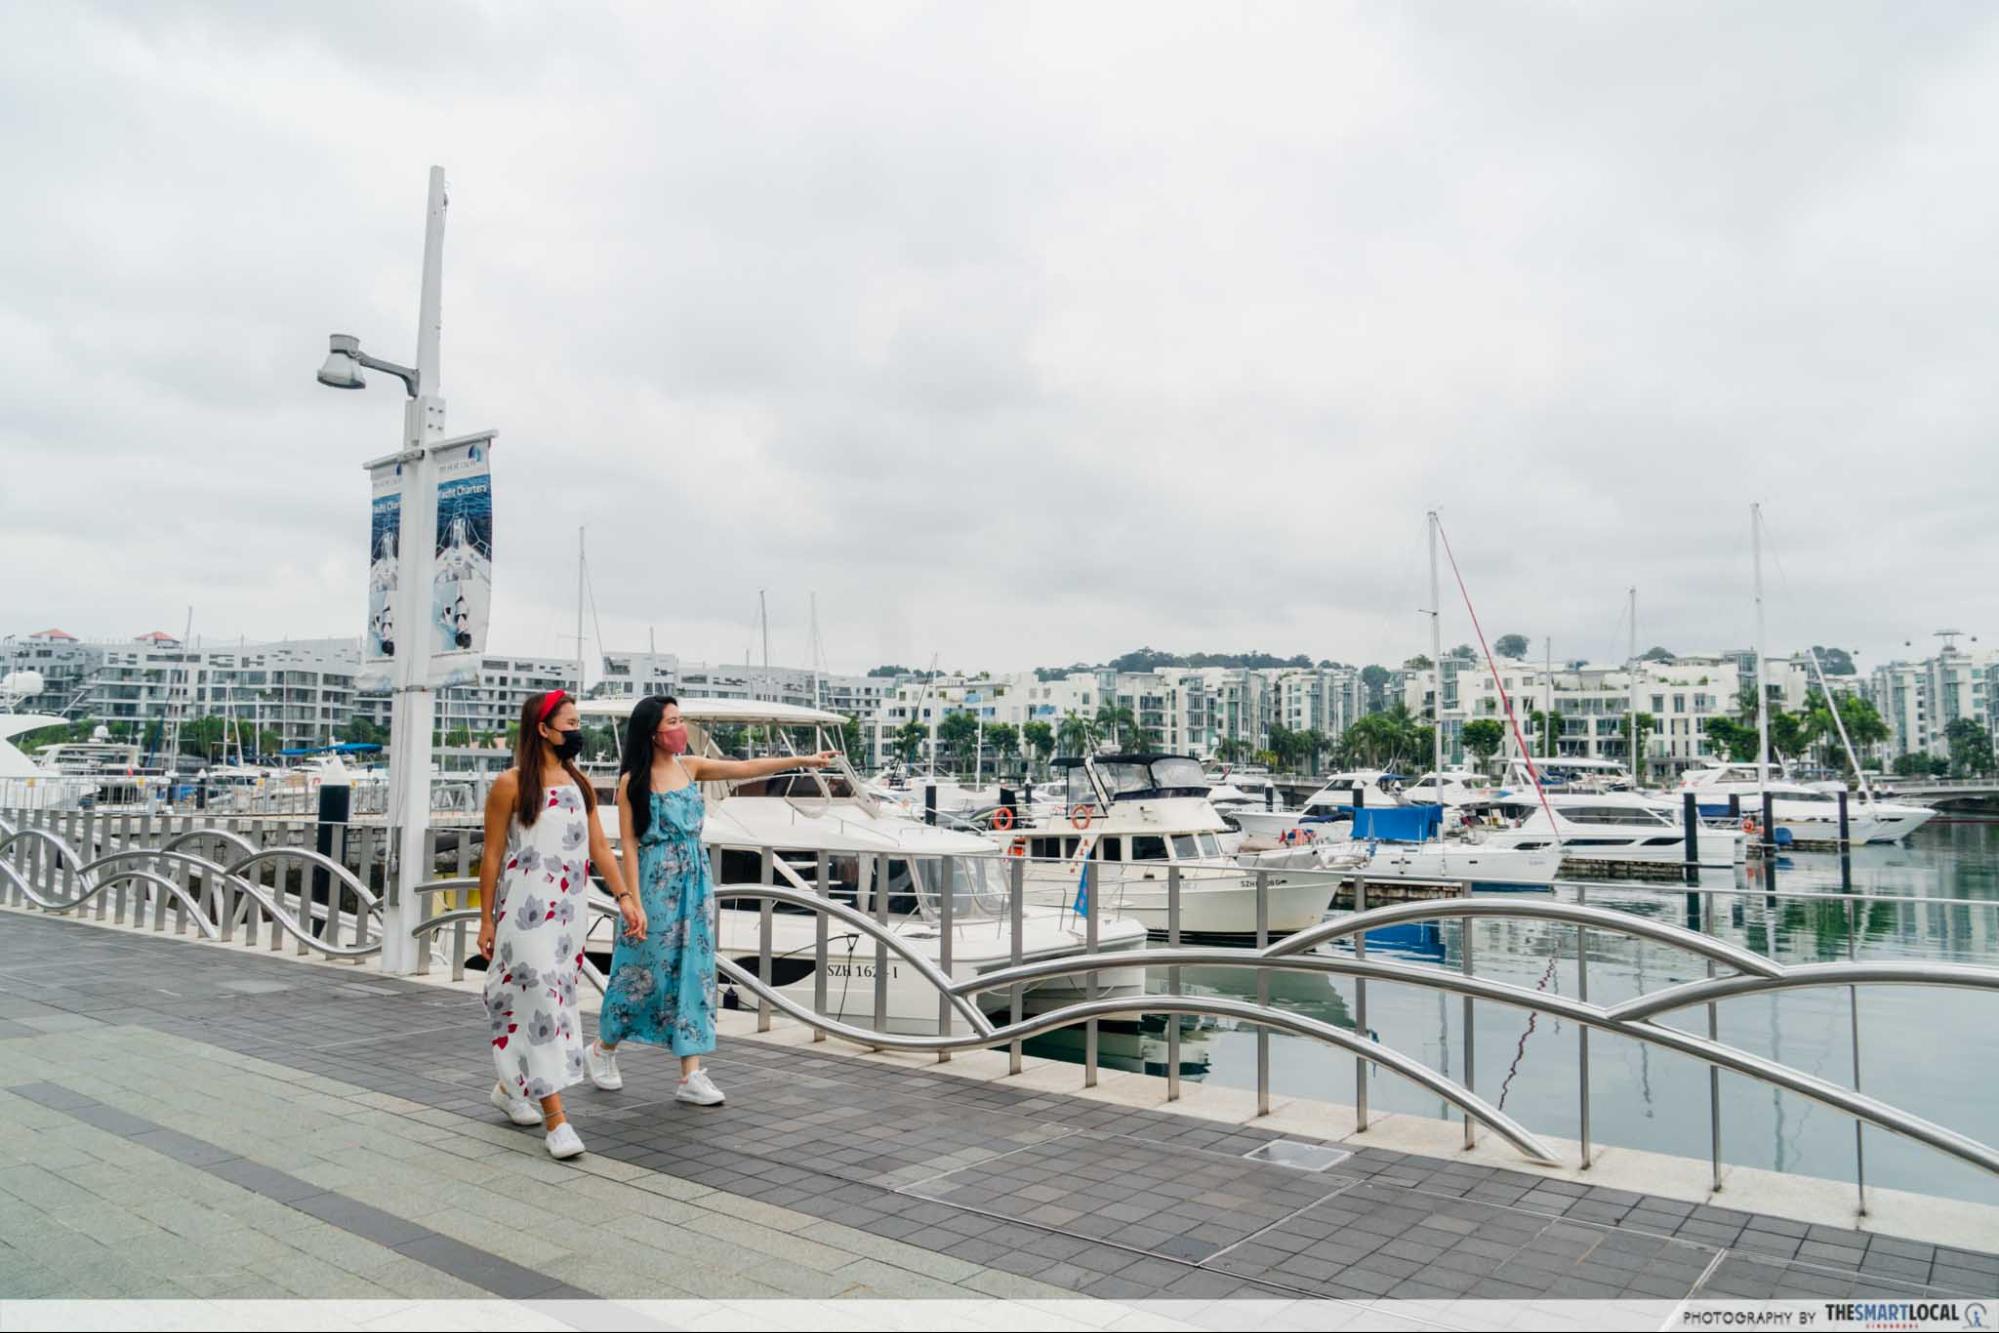 Marina at Keppel Bay Pier - Singapore